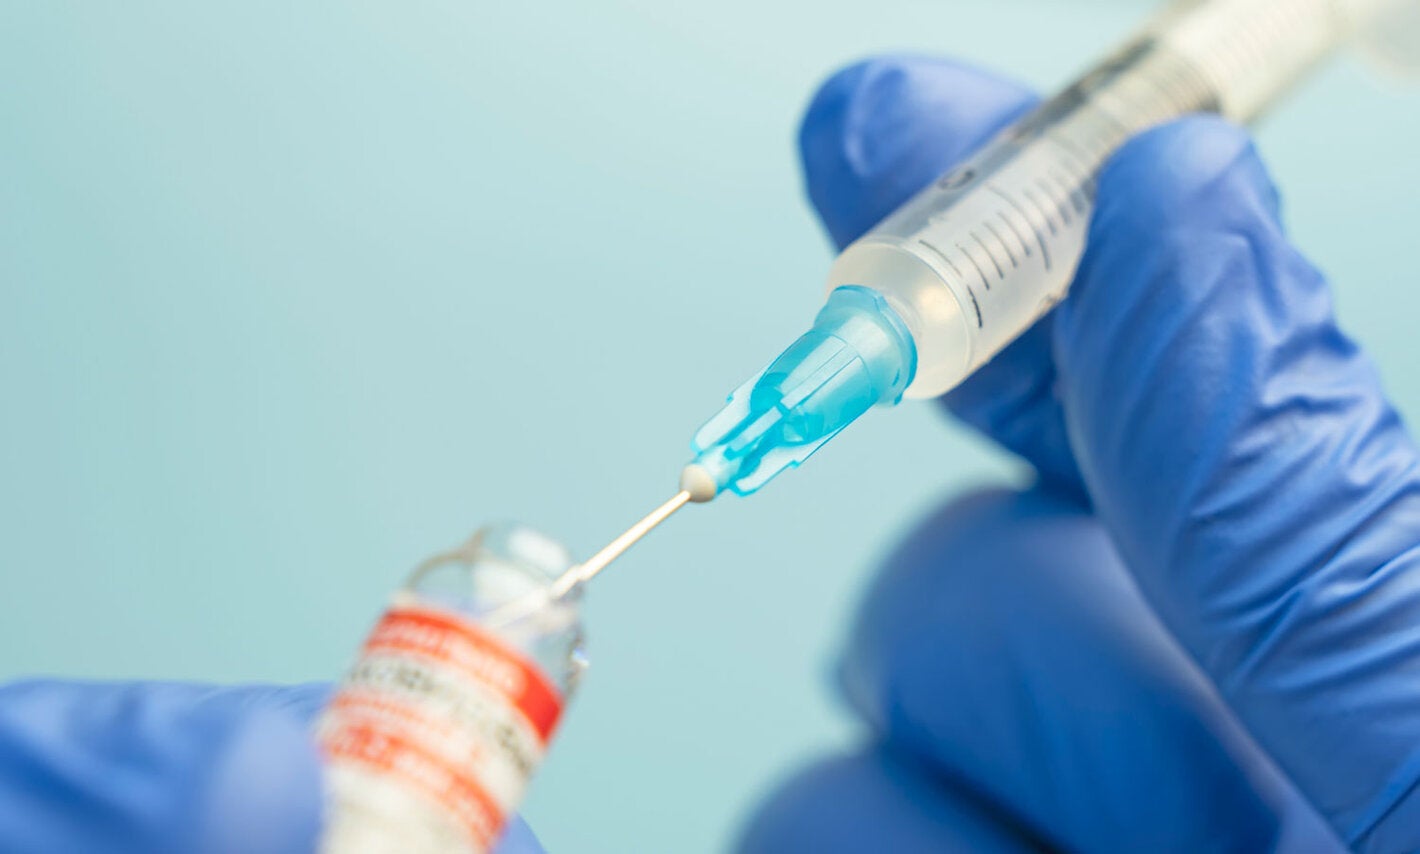 Vacuna ARNm